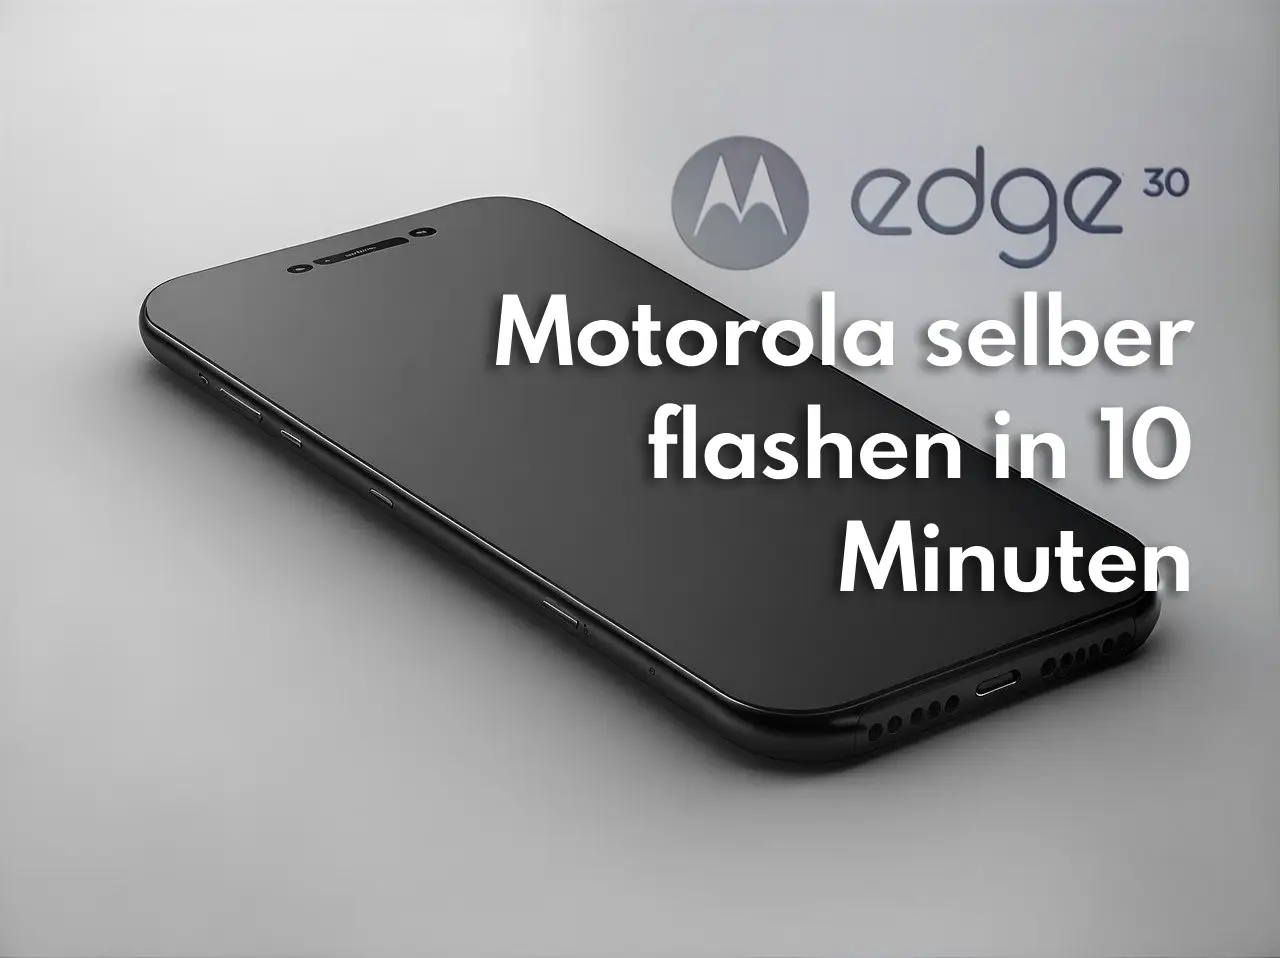 Motorola Edge 30 flashen in 10 Minuten